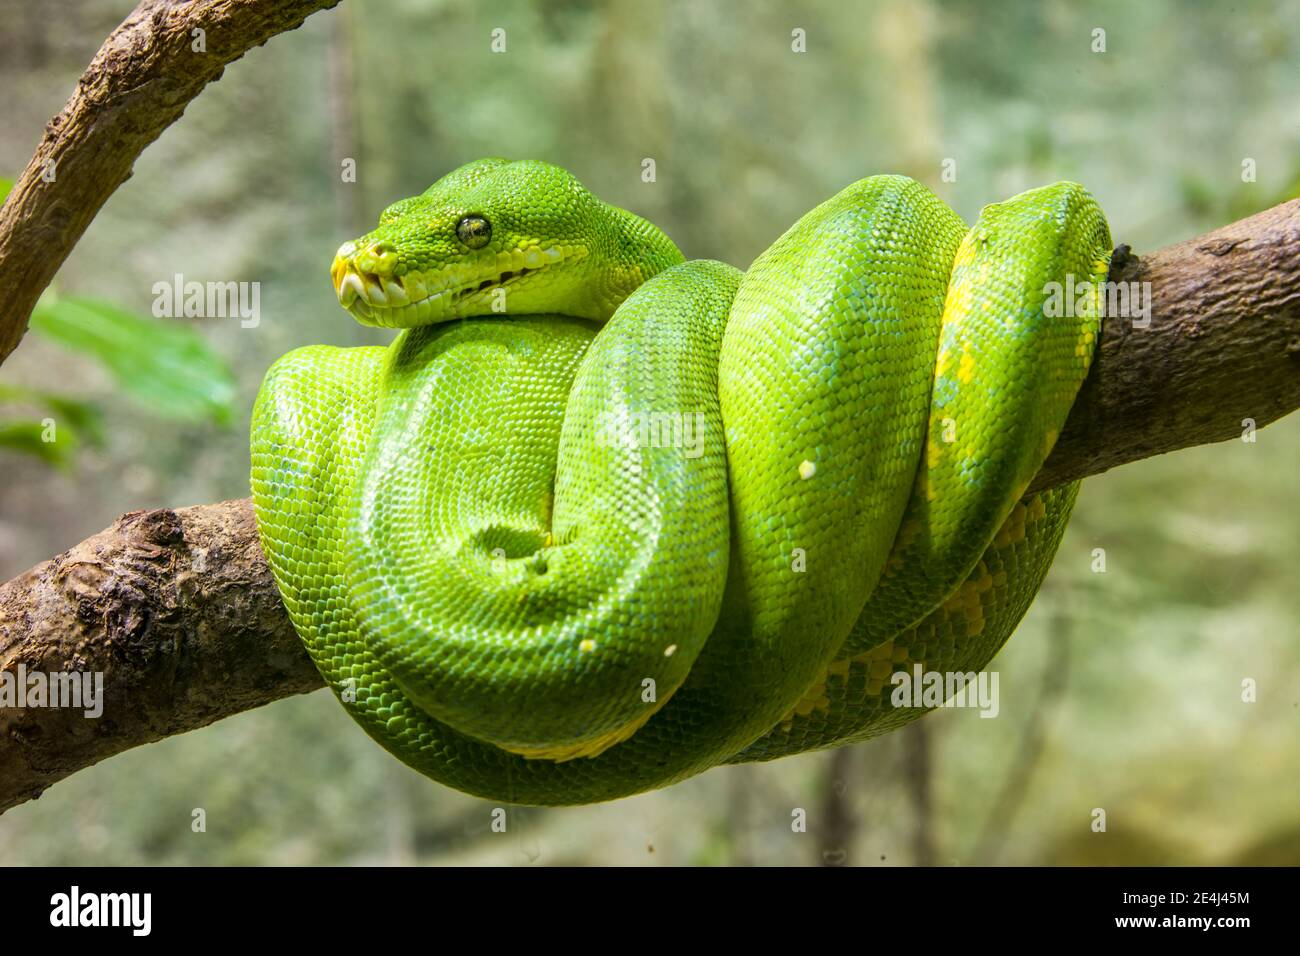 Le python vert (Morelia viridis) est une espèce de serpent de la famille des Pythonidae, un serpent vert vif vivant généralement dans les arbres. Banque D'Images